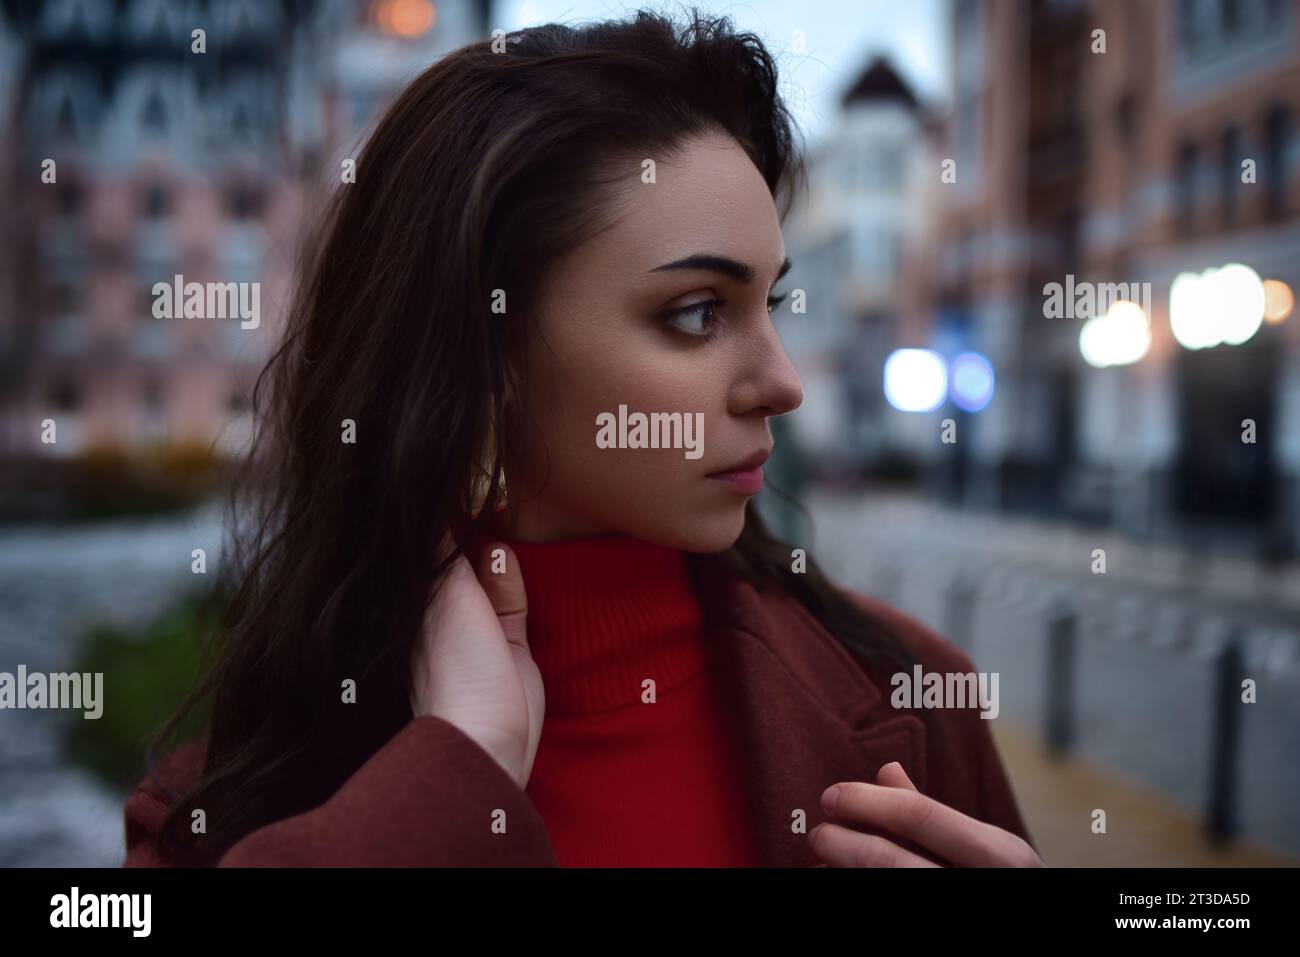 Retrato de cerca dramático de la mujer hermosa joven que mira a un lado contra el fondo de la ciudad de la noche Foto de stock